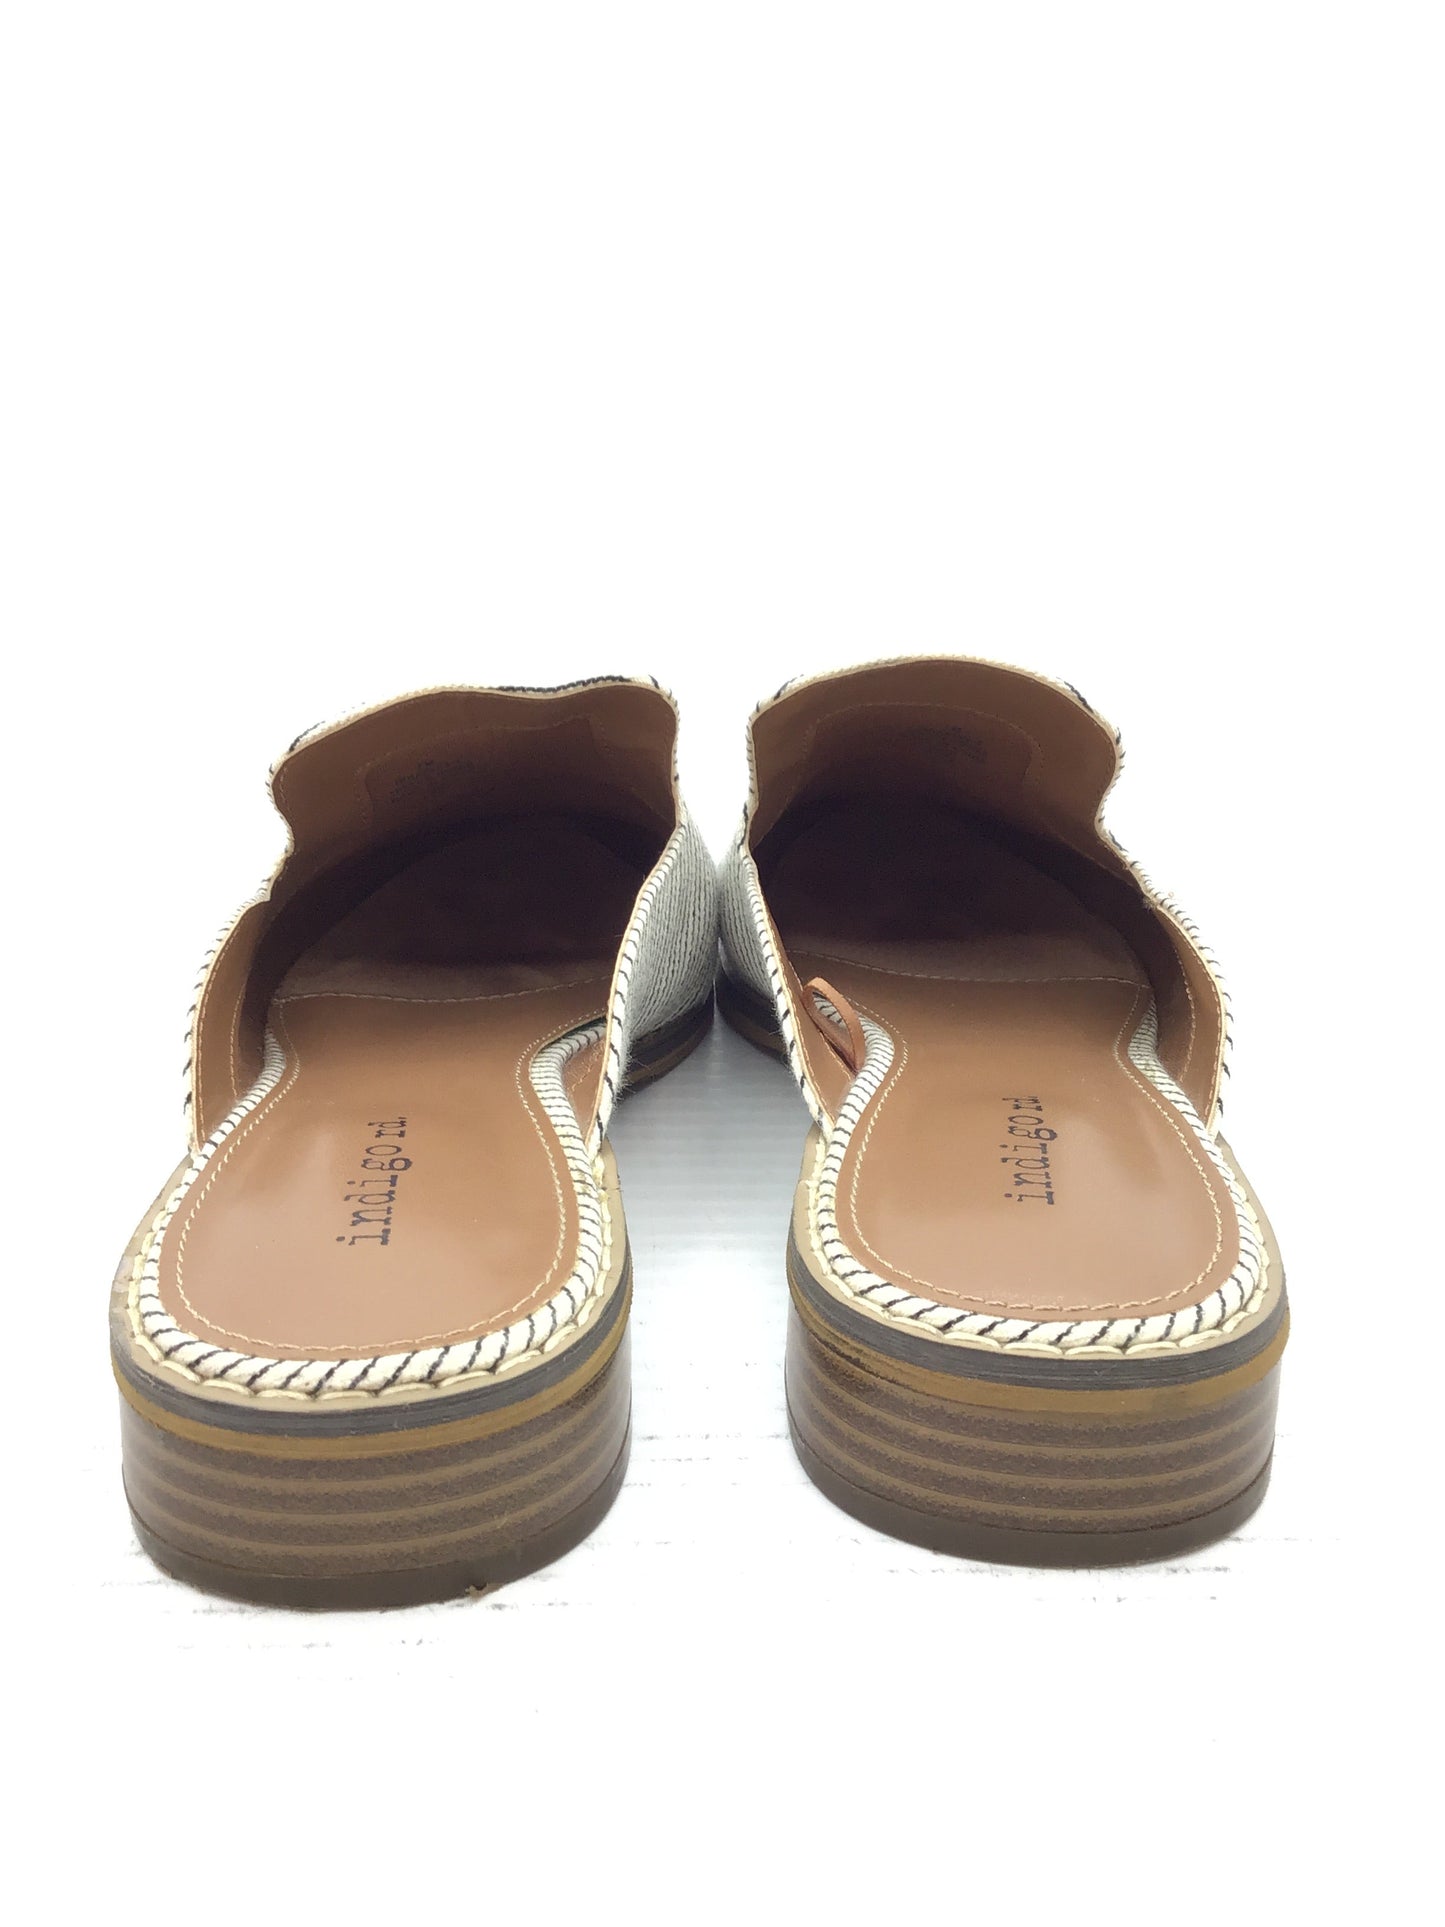 Sandals Flip Flops By Indigo Rd  Size: 7